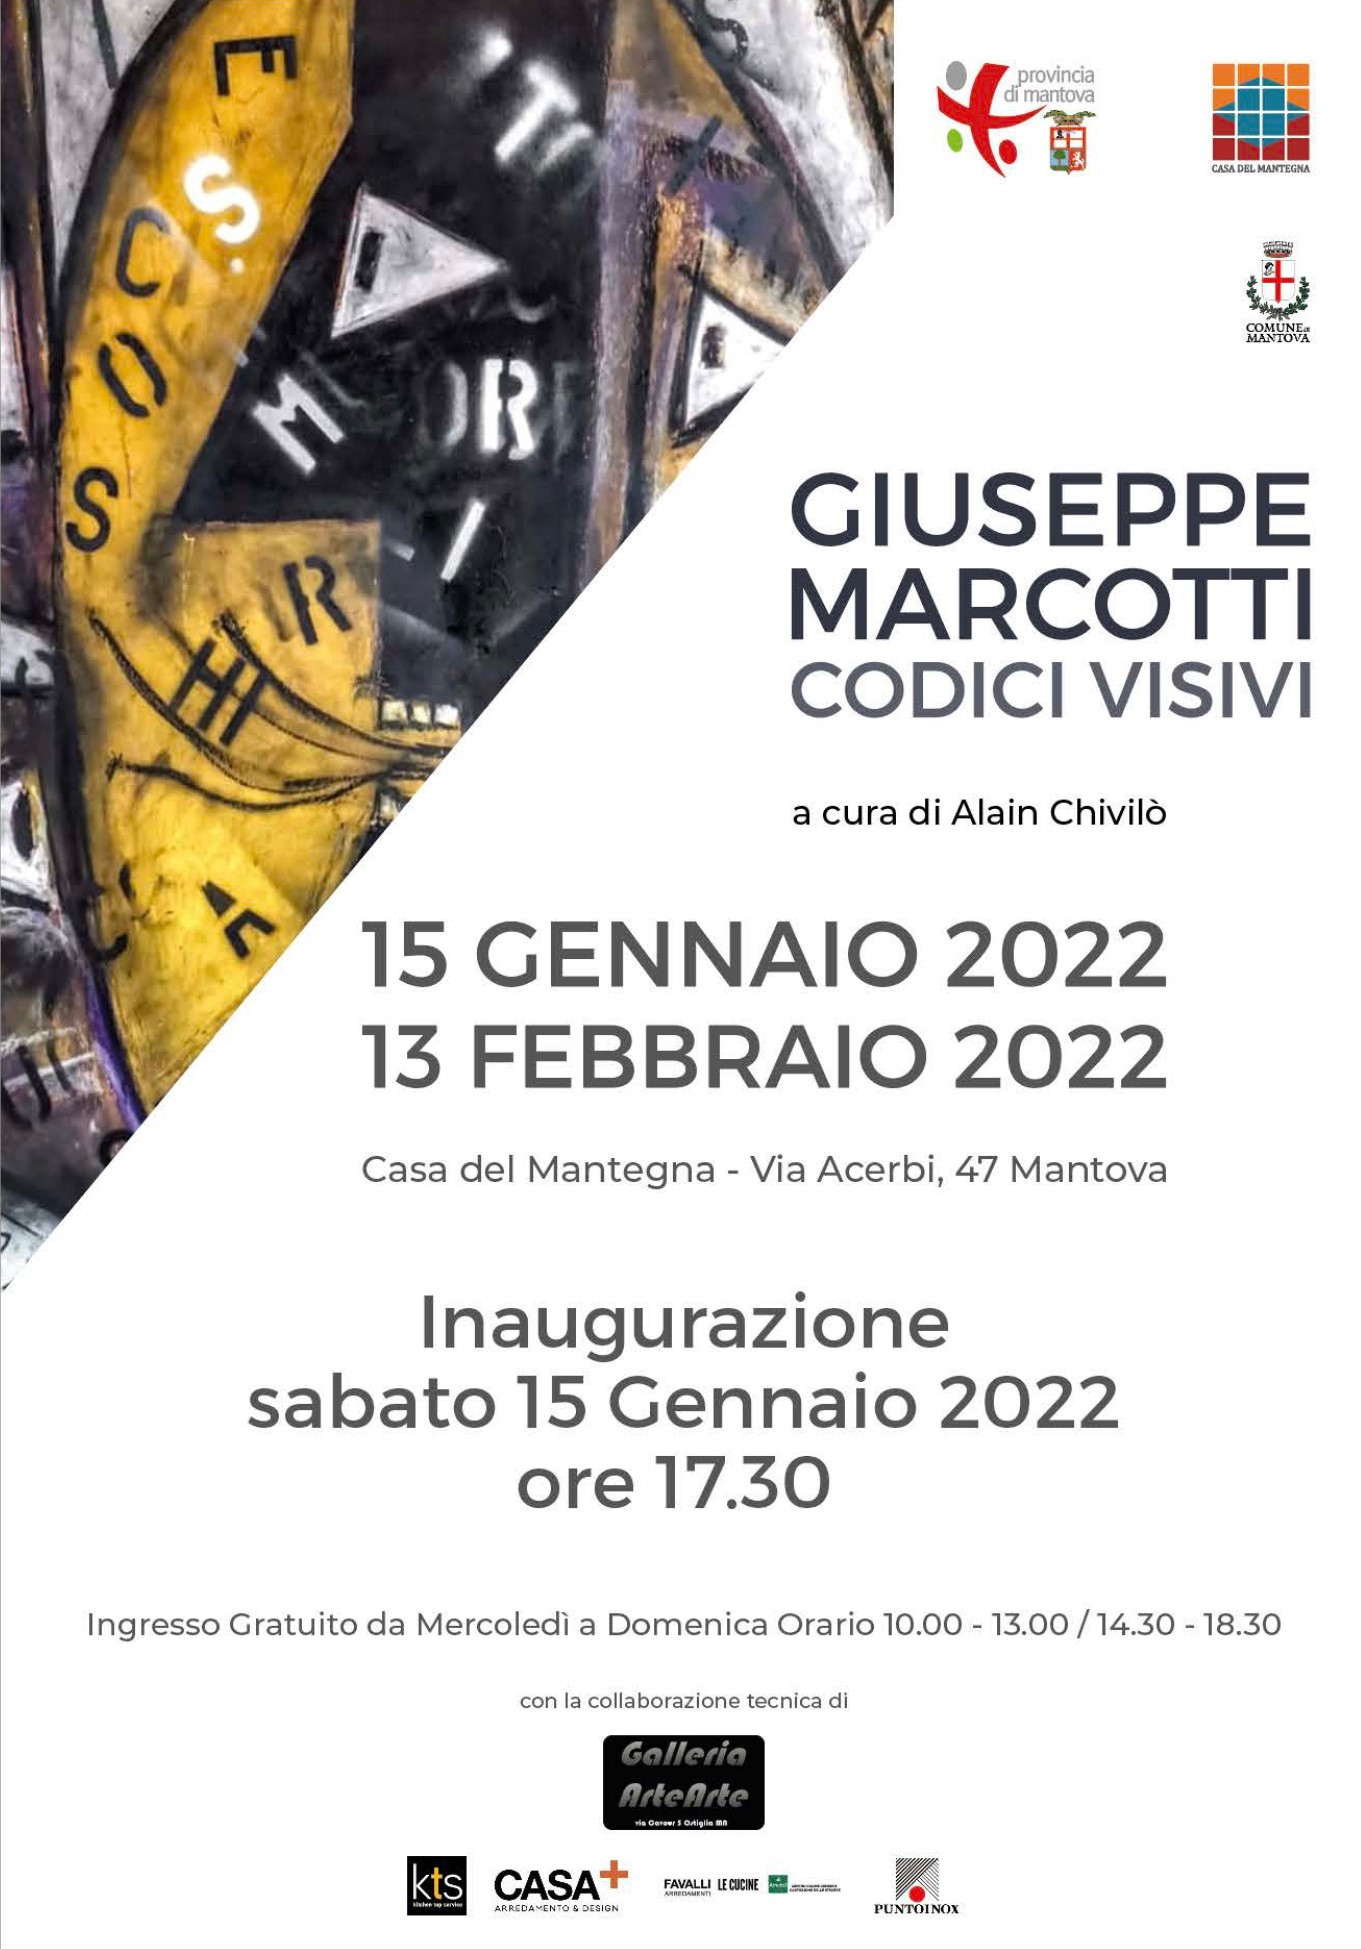 Giuseppe Marcotti, Codici Visivi_a cura di Alain Chivilo_Casa del Mantegna Mantova